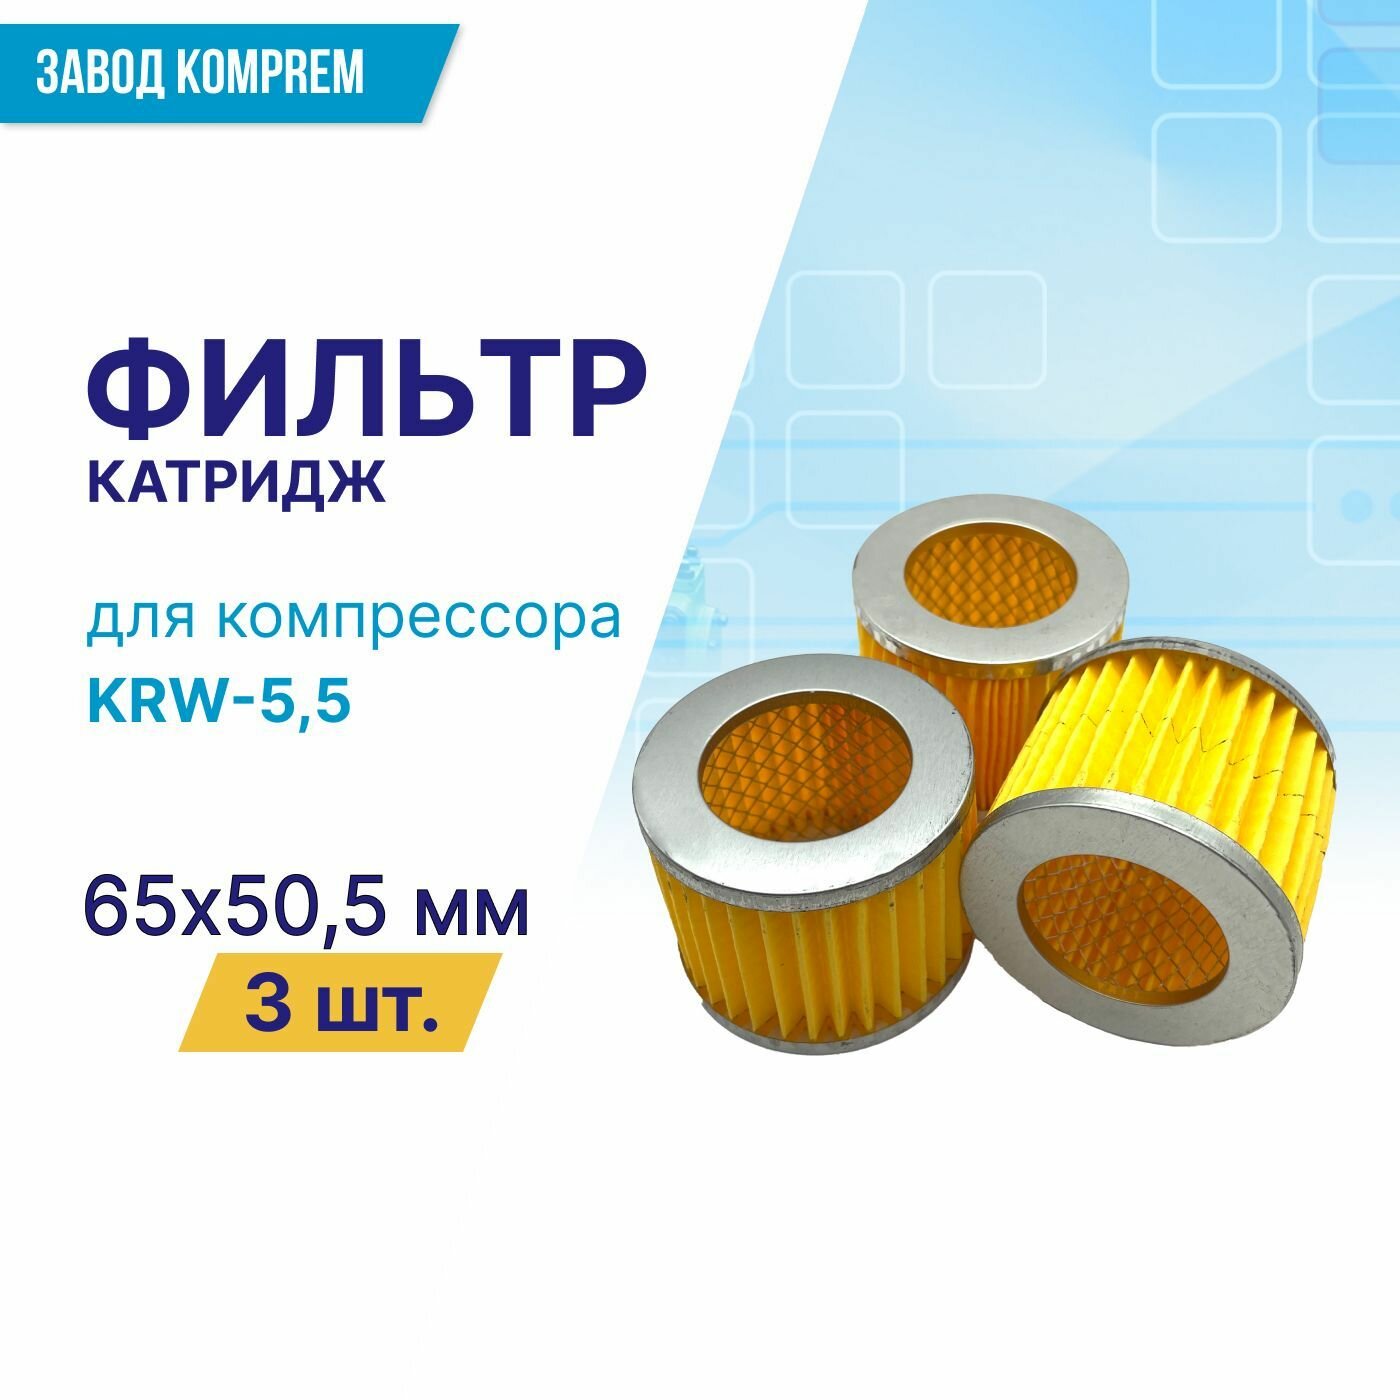 Фильтр (картридж) 65 мм х 50.5 мм для компрессора KRW-55 (комплект 3 шт.)